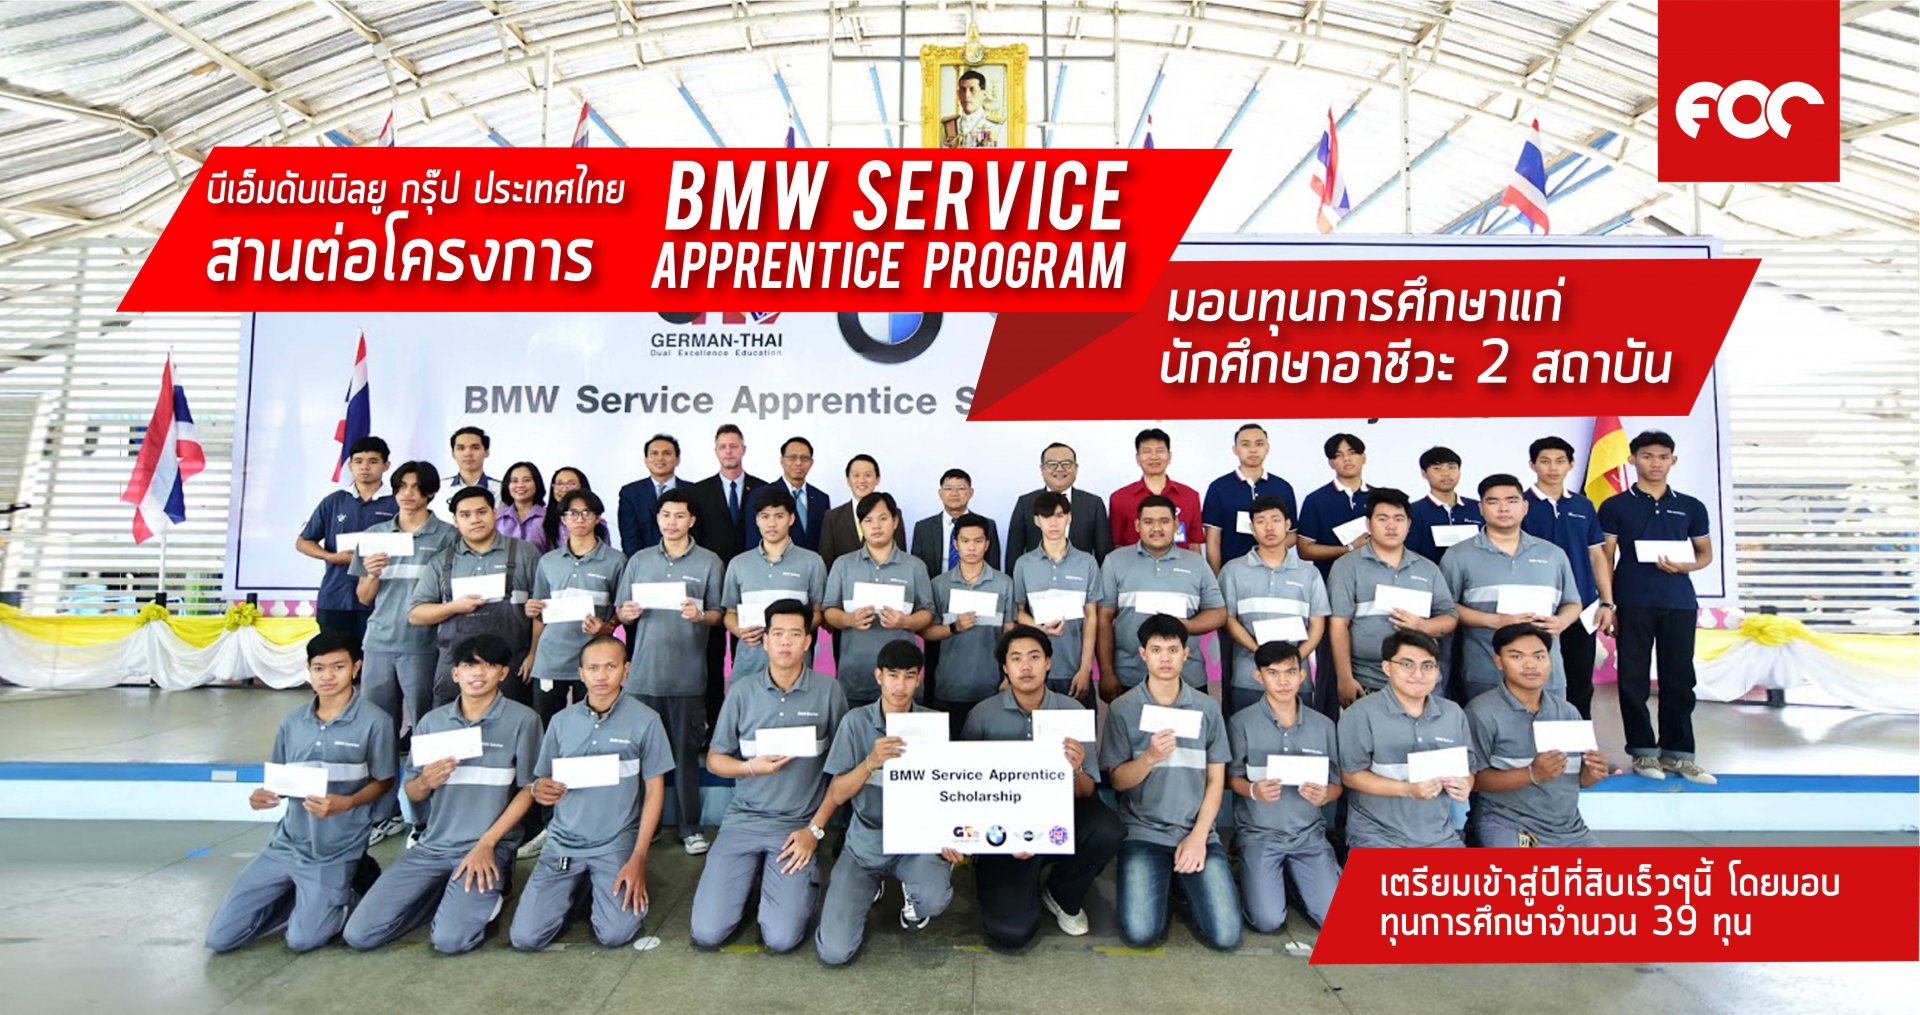 บีเอ็มดับเบิลยู กรุ๊ป ประเทศไทย เตรียมสานต่อโครงการ BMW Service Apprentice Program สู่ปีที่ 10 มอบทุนการศึกษาแก่นักศึกษาอาชีวะ จาก 2 สถาบัน